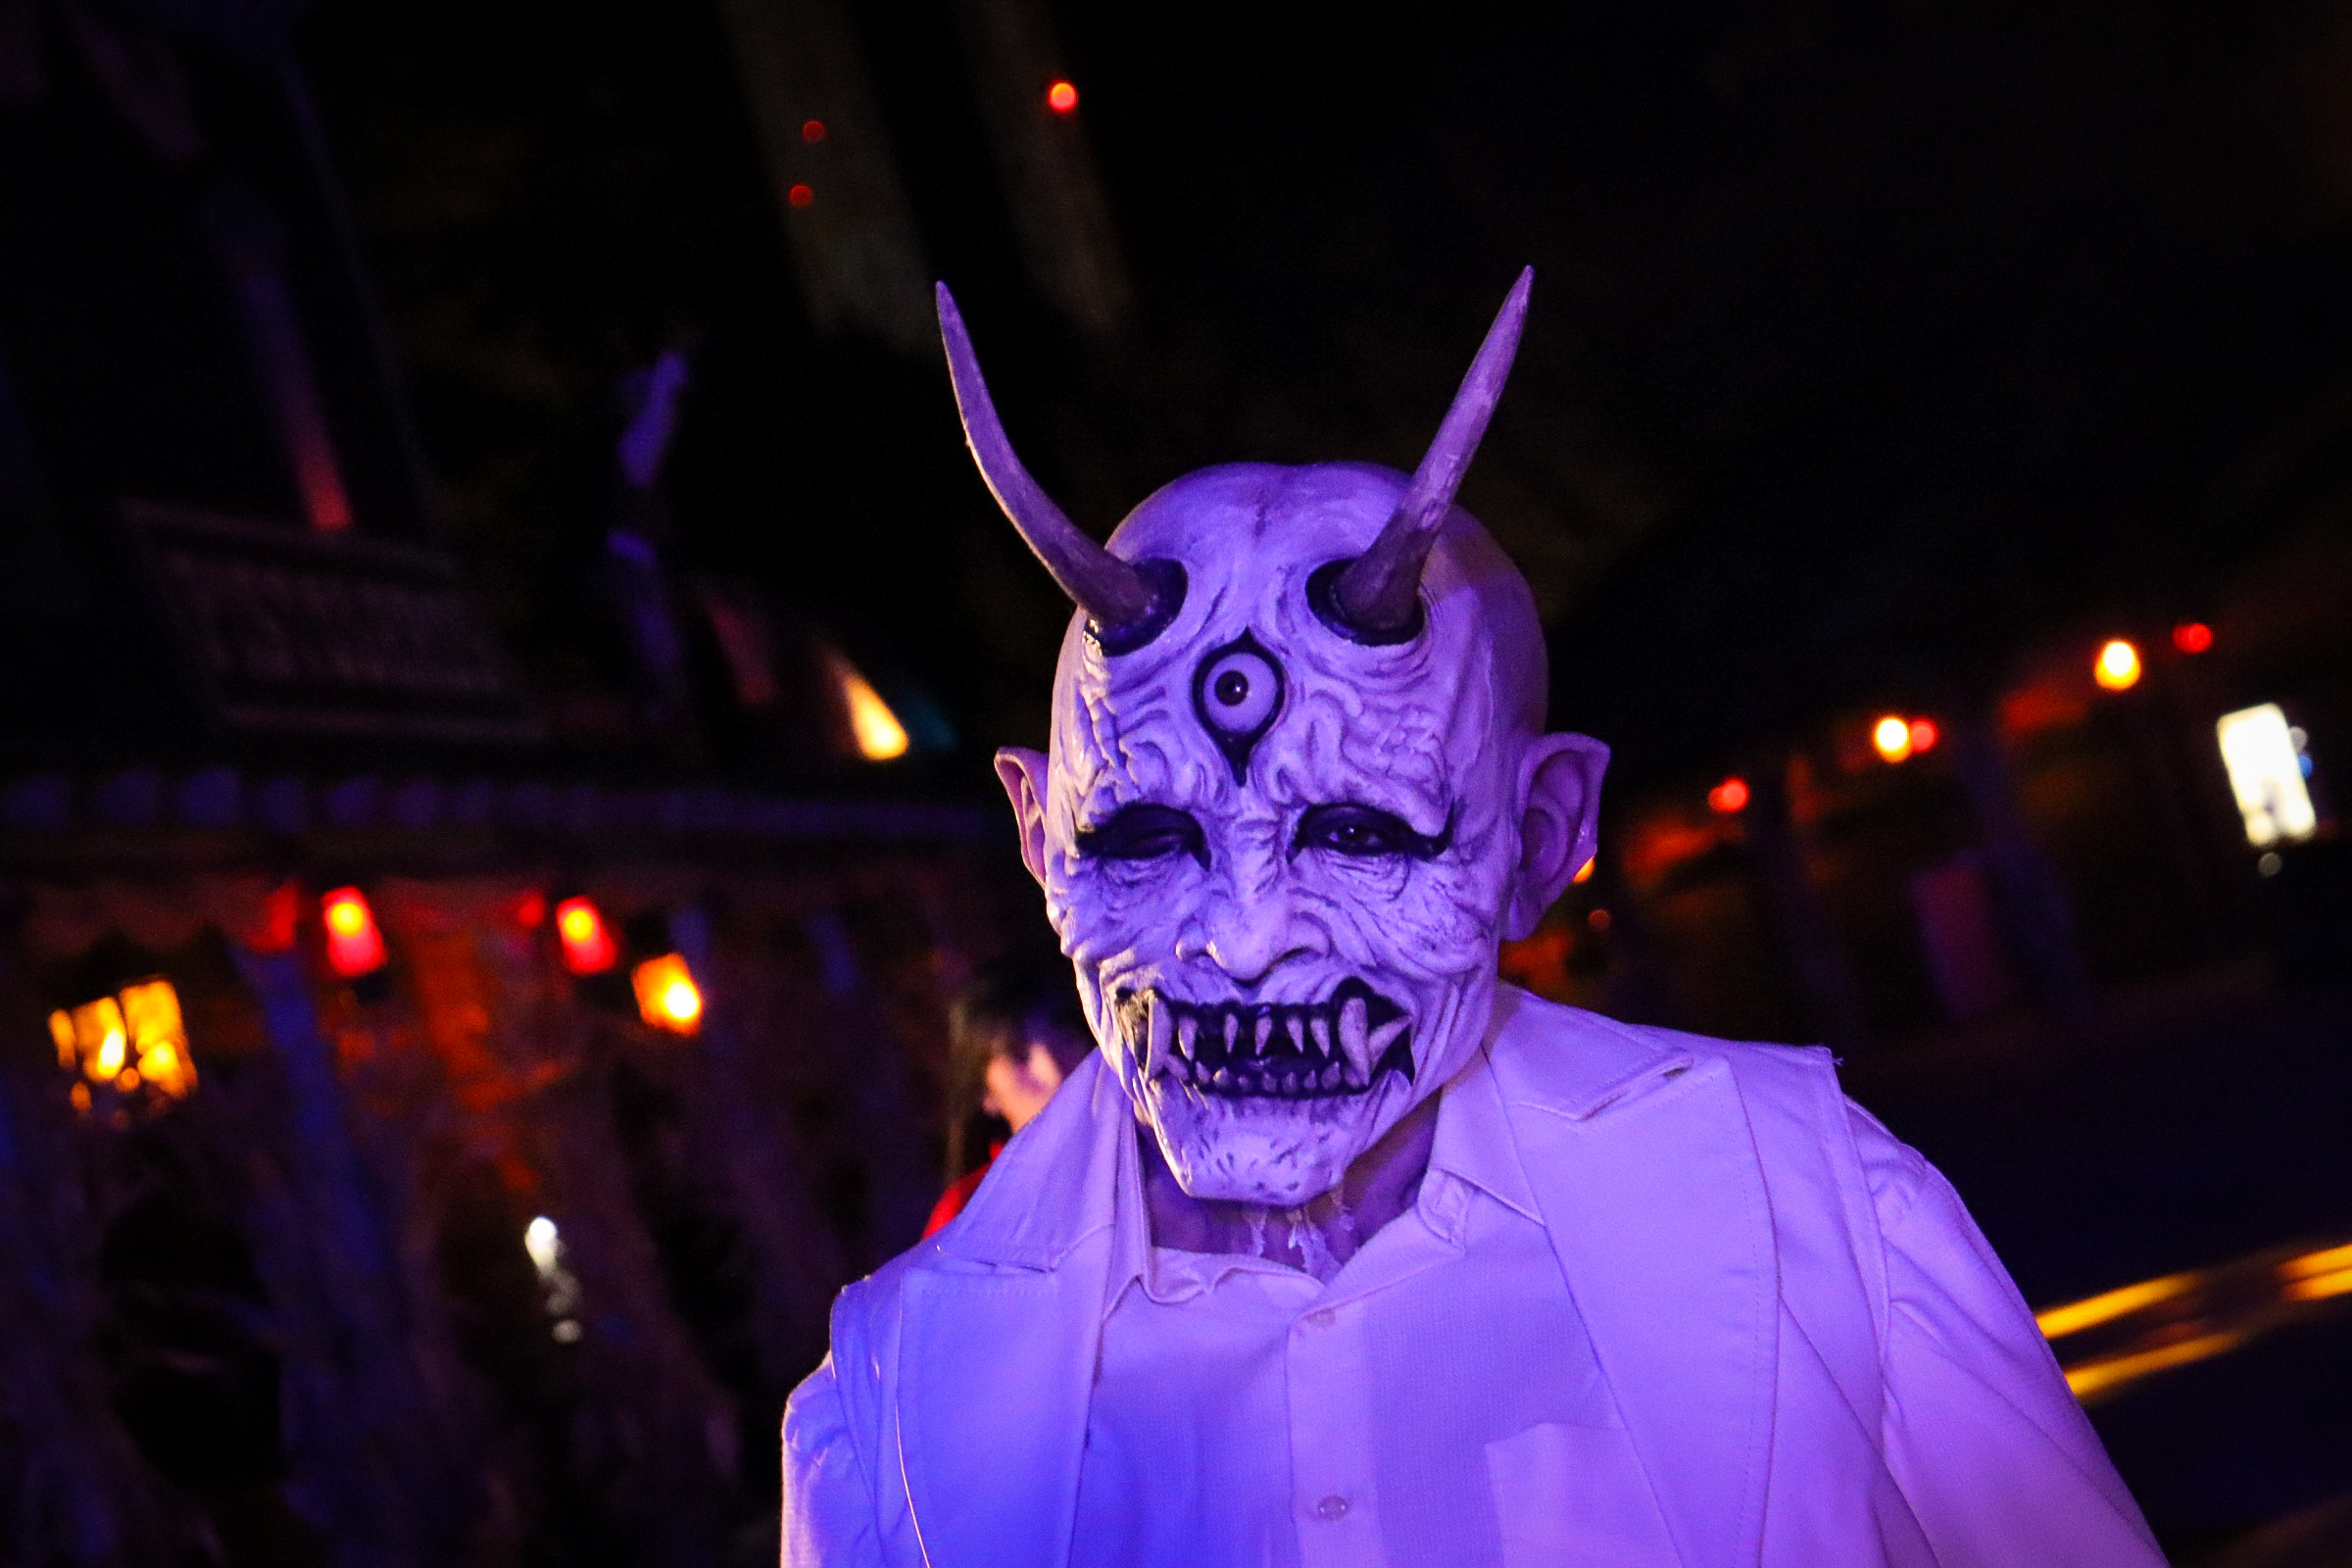 Parque Warner Madrid celebrará las “Halloween Horror Nights” durante las noches del 30 y 31 de octubre